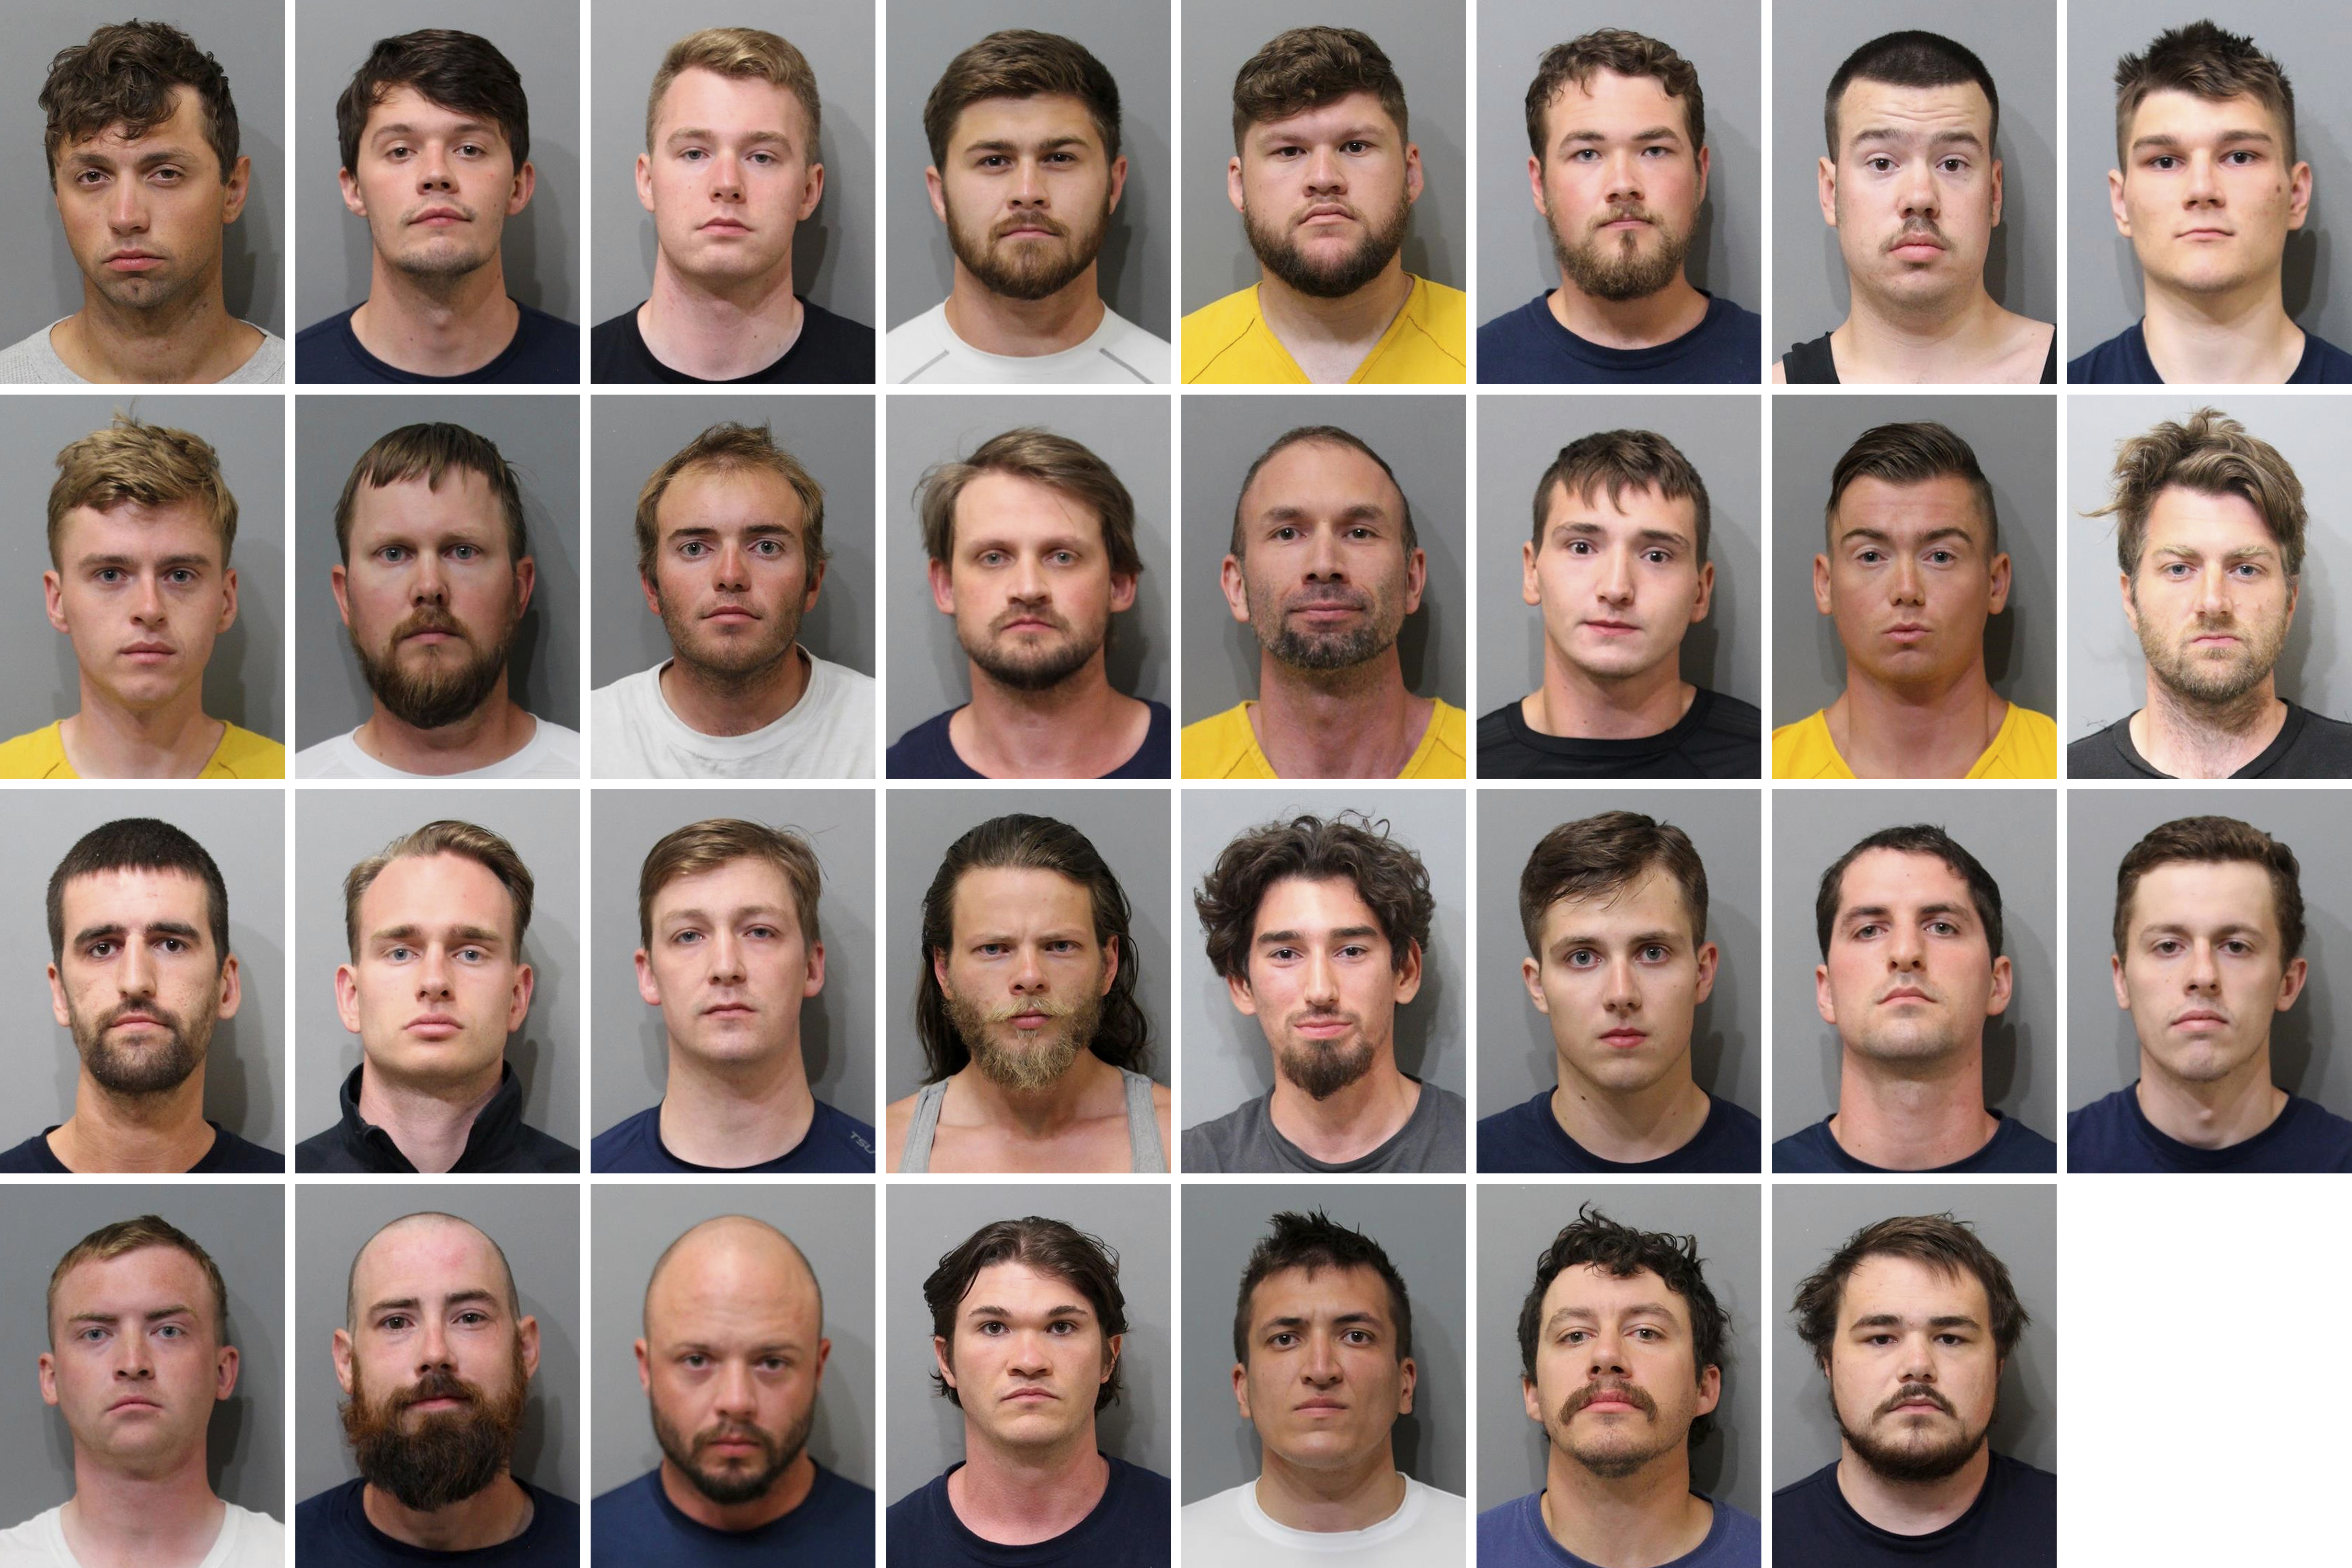 The 31 arrested men